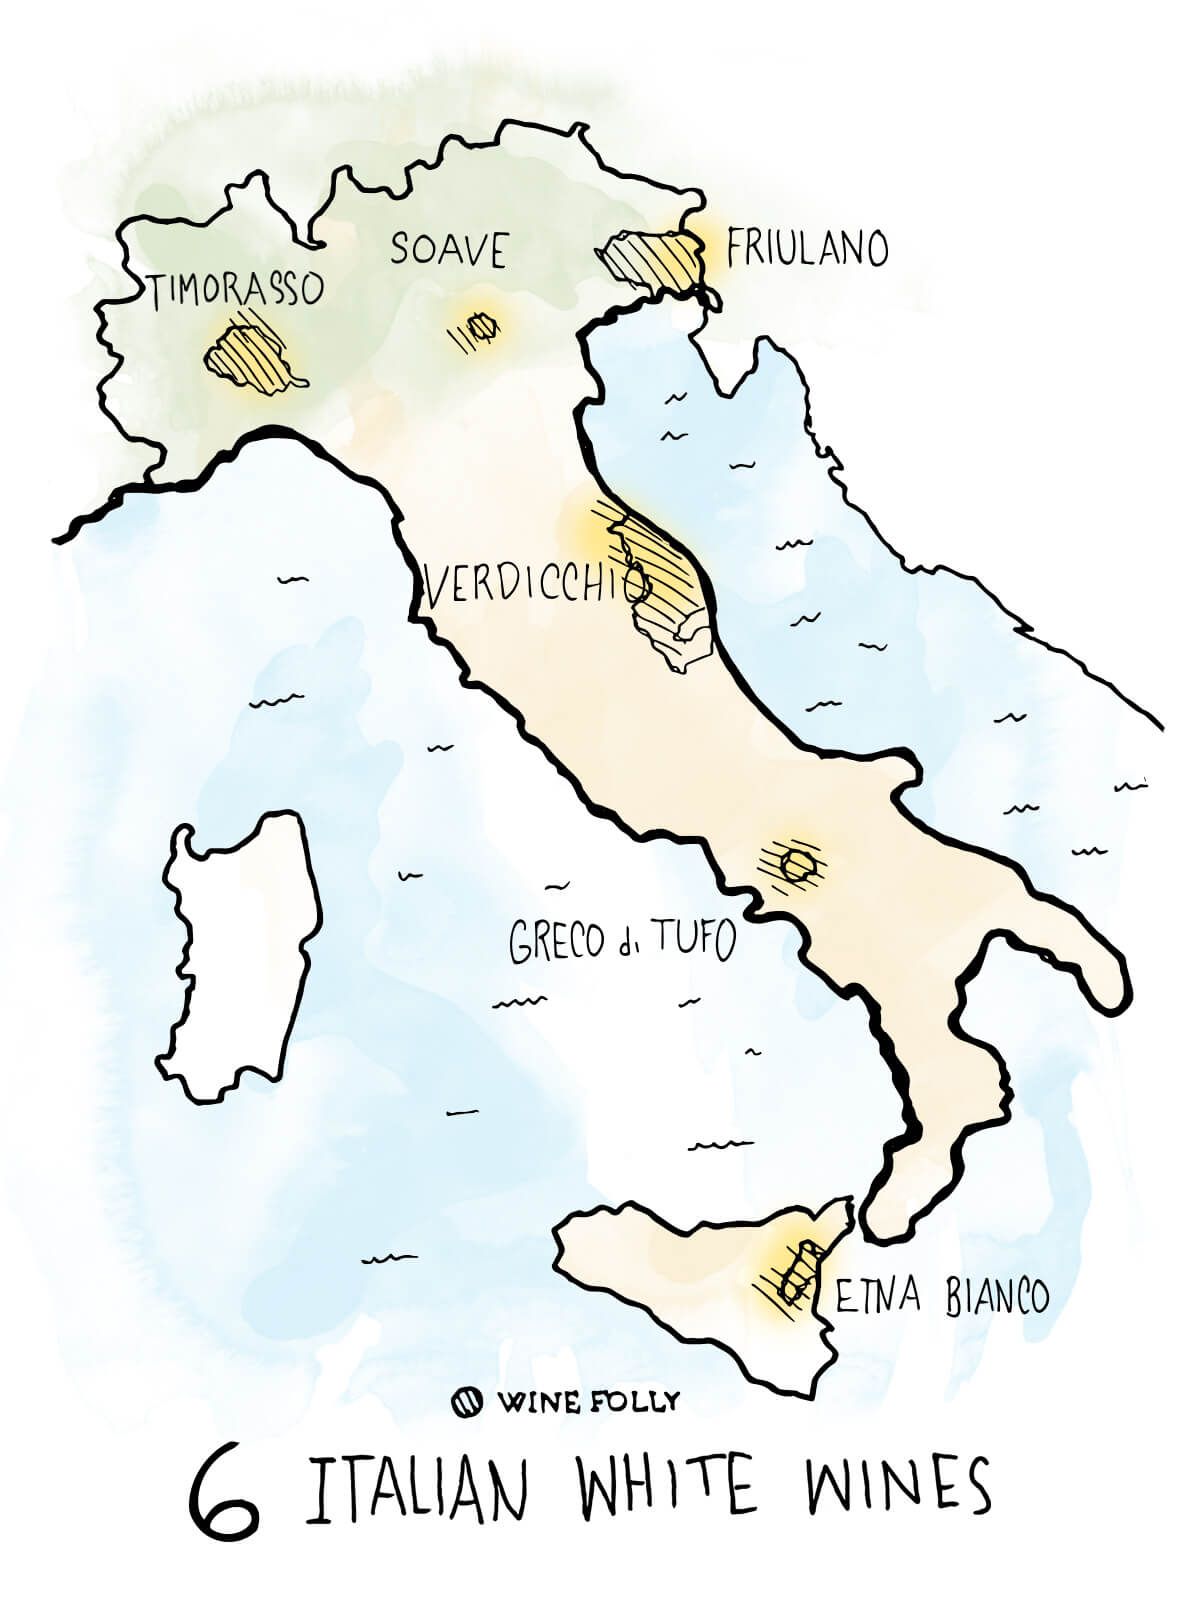 6-италиански-бели-вина-за-да-знам-карта-илюстрация-winefolly